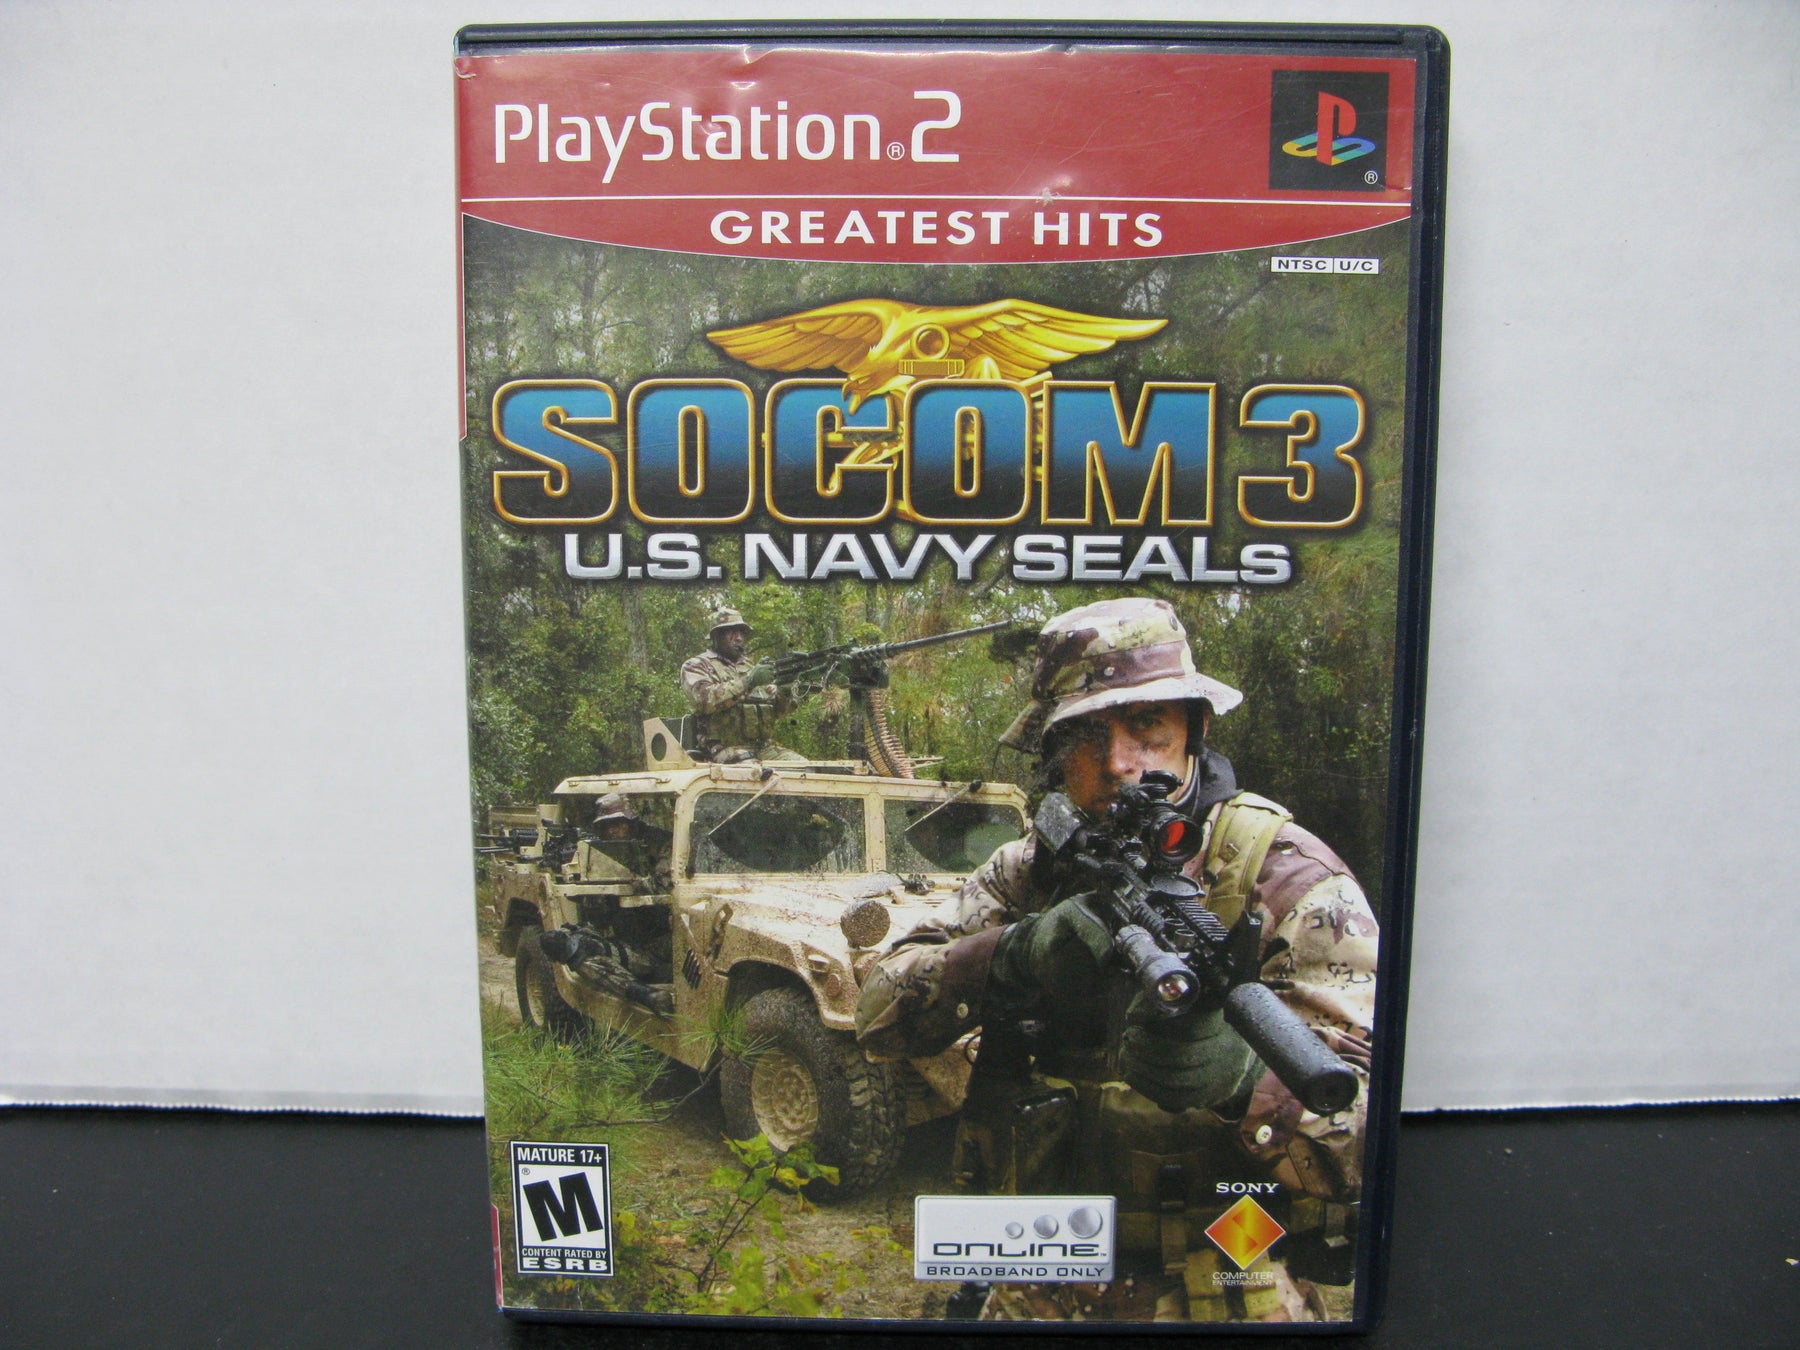 Playstation 2 Socom 3 U.S. Navy Seals